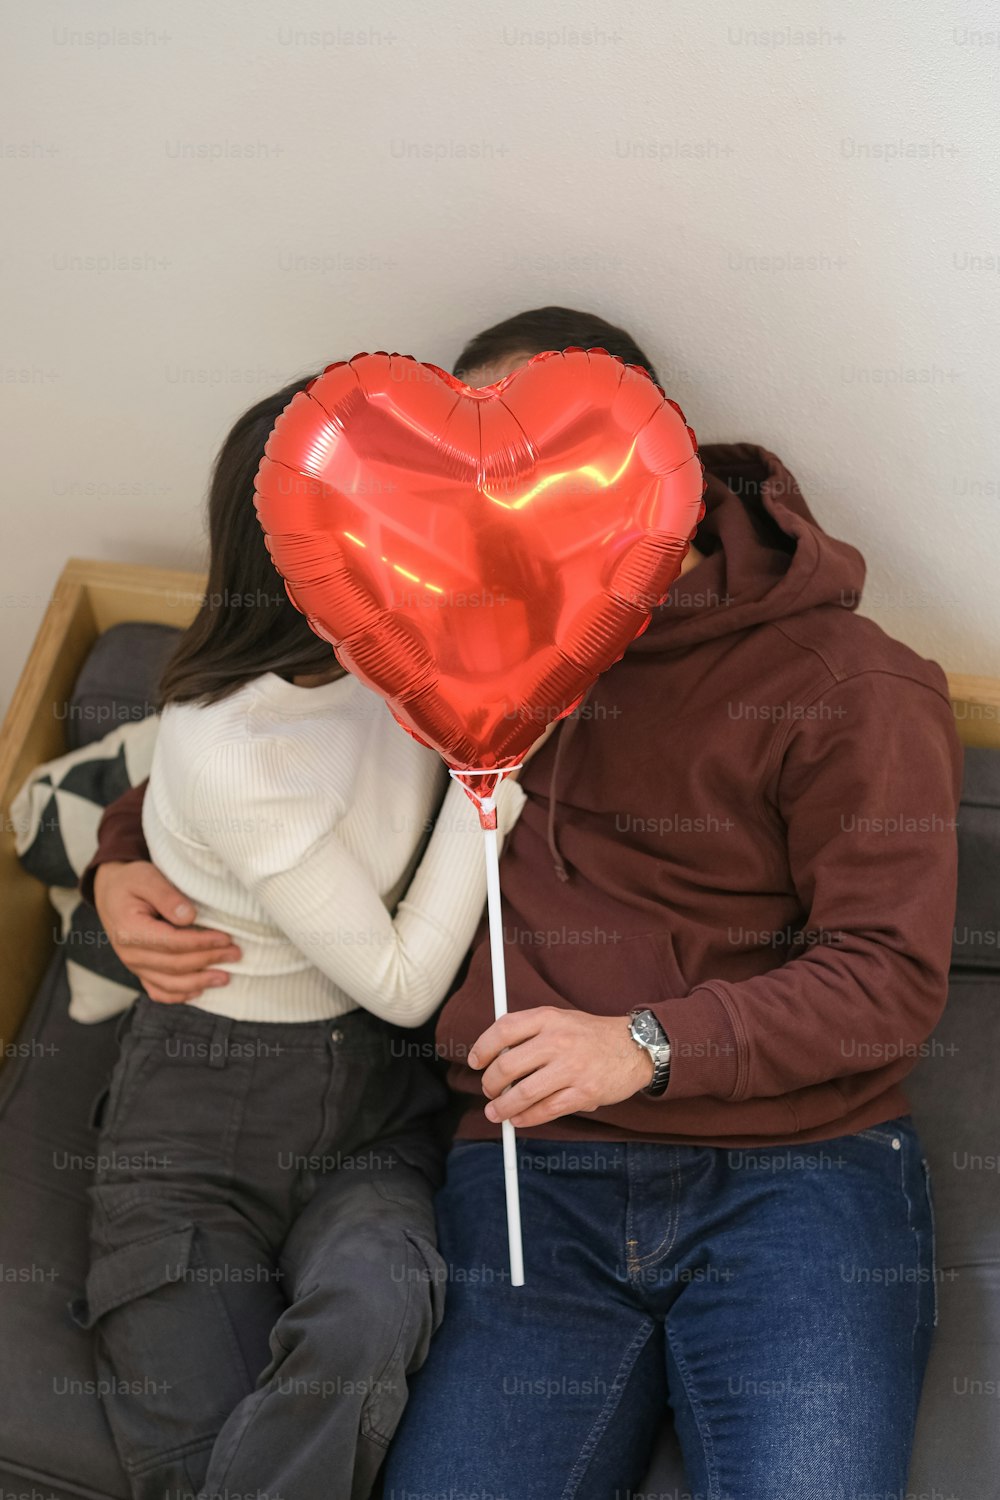 Un hombre y una mujer sentados en un sofá con un globo en forma de corazón